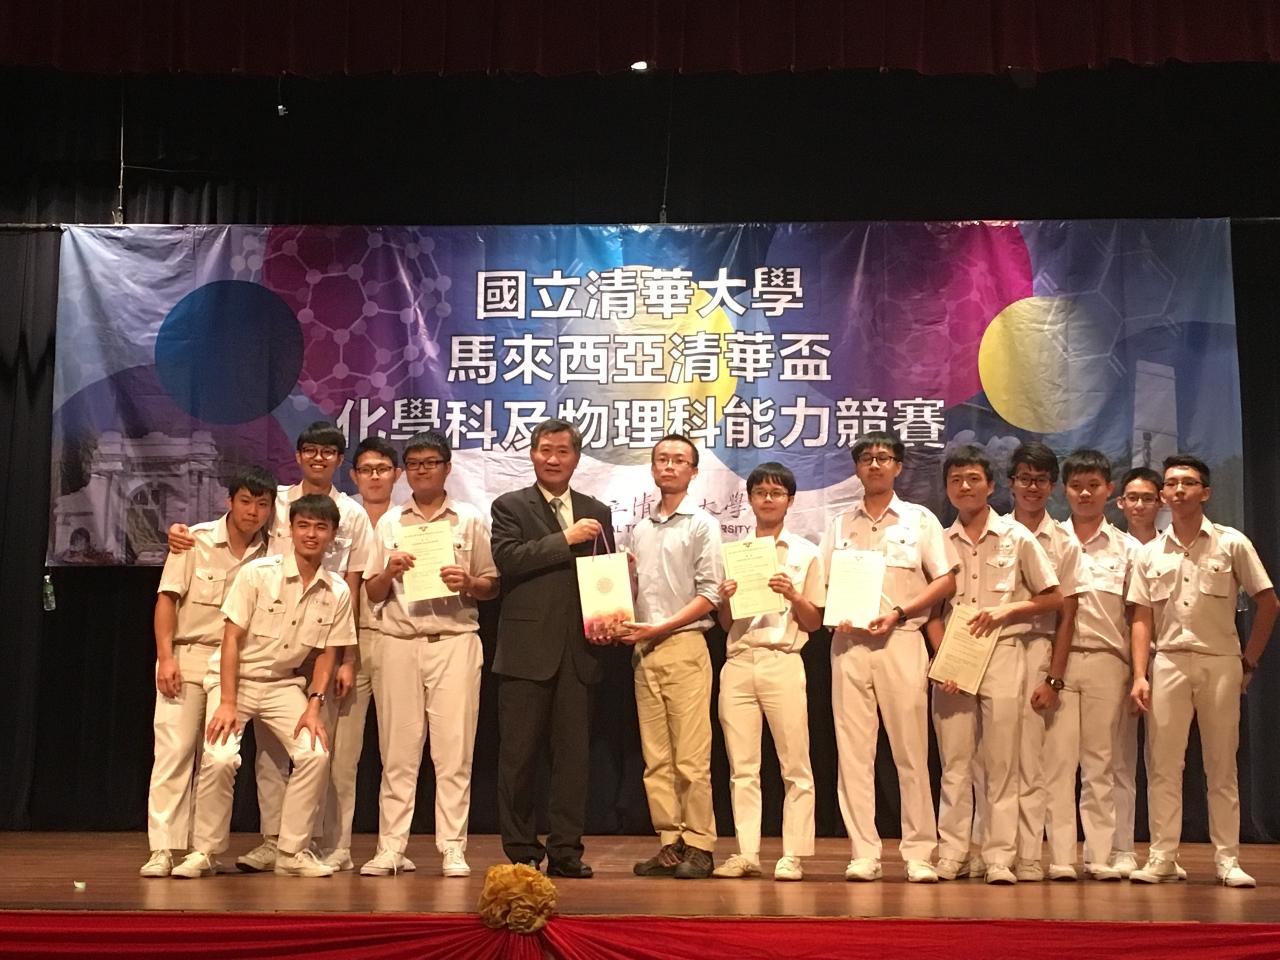 尹公使新垣頒發「2018馬來西亞清華盃化學科及物理科能力競賽」化學科團體獎給獲獎學校寬柔中學。 
